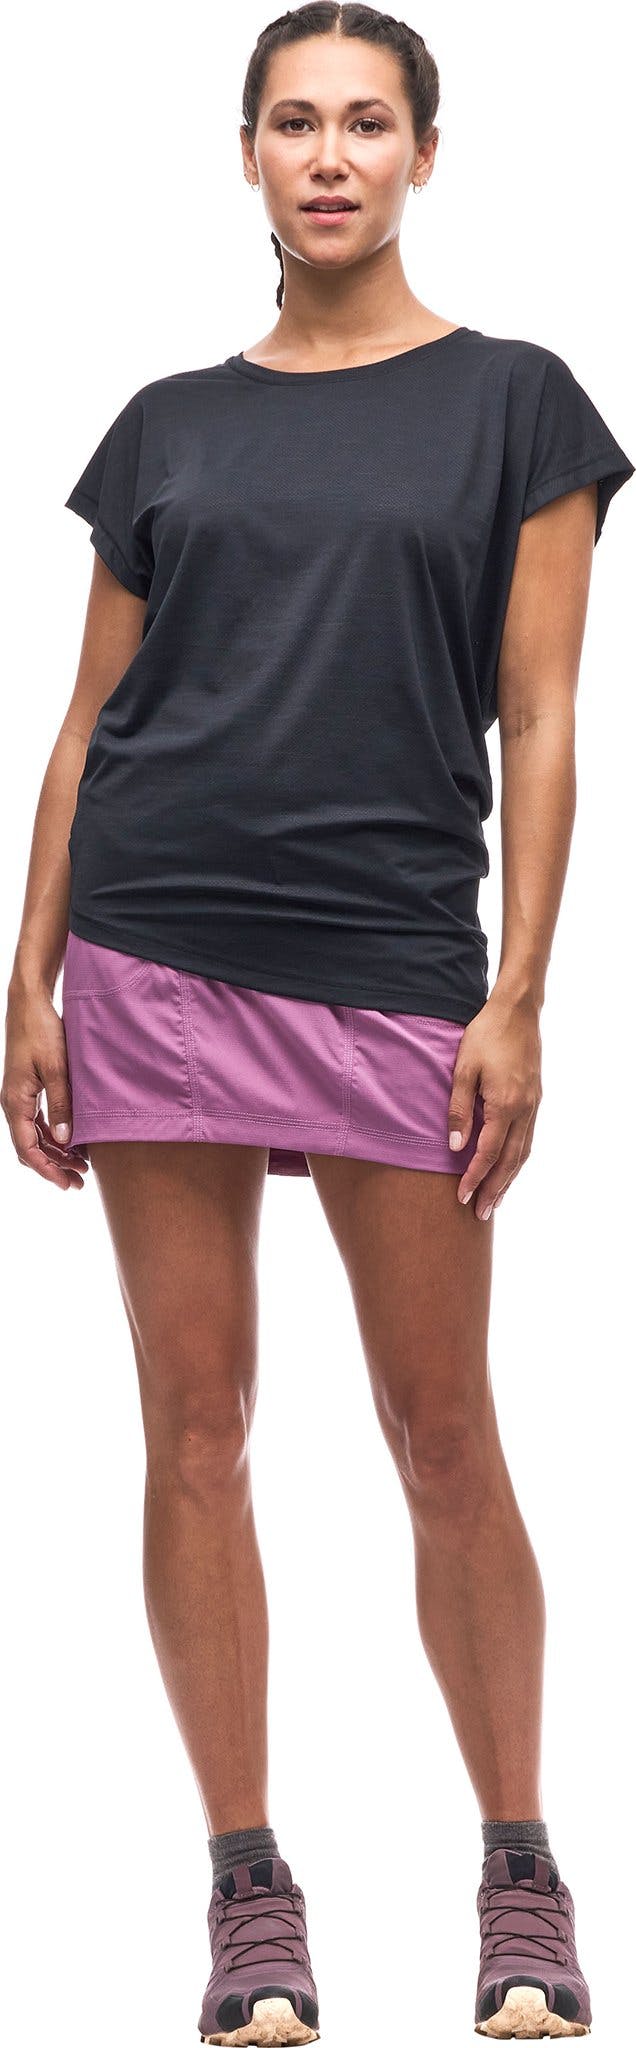 Numéro de l'image de la galerie de produits 1 pour le produit T-shirt à manches courtes avec ourlet asymétrique Ester III - Femme